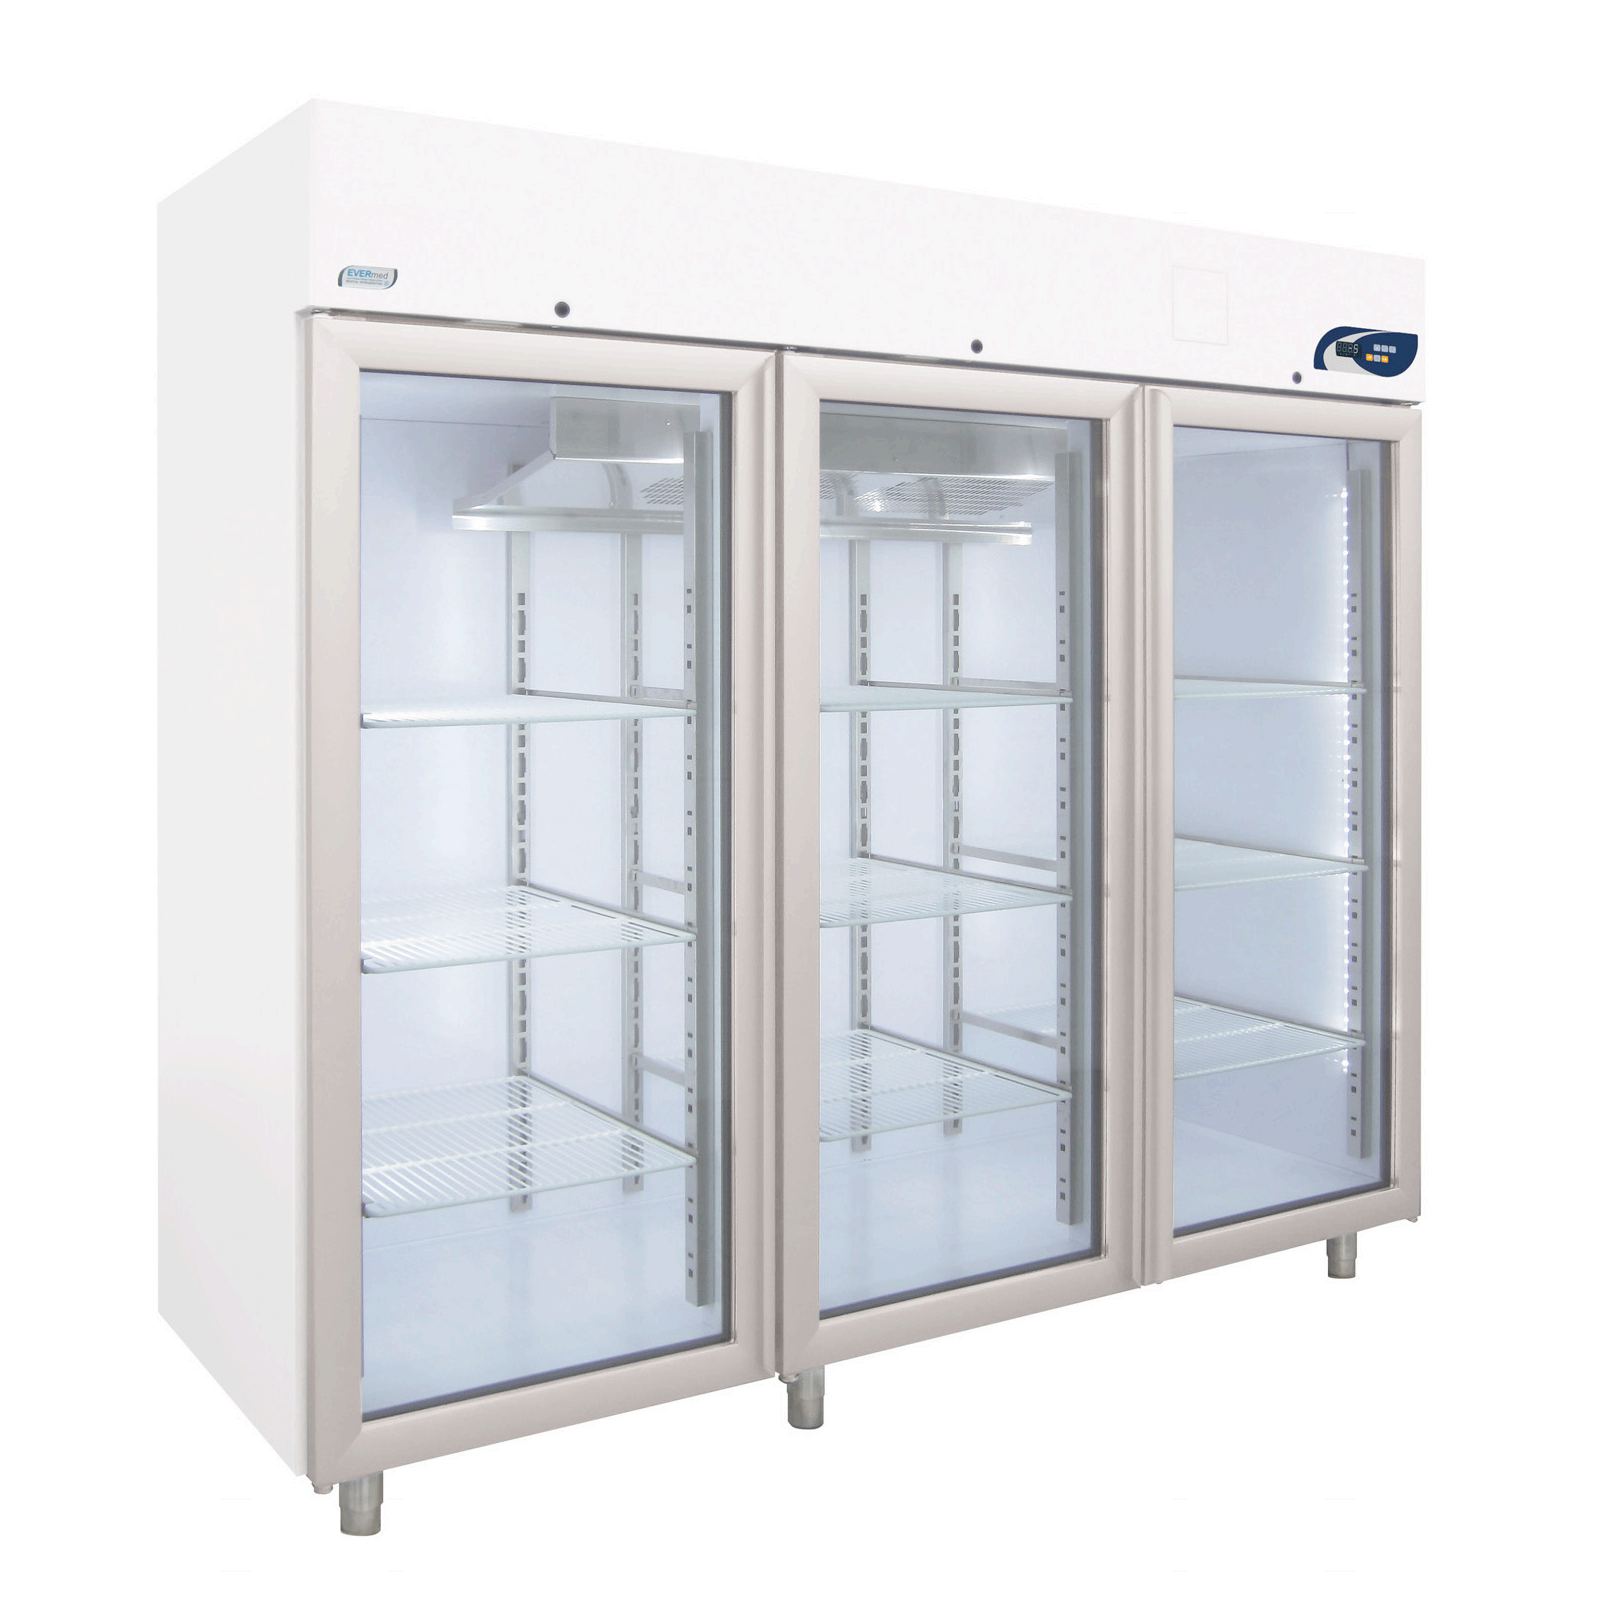 Tủ lạnh bảo quan mẫu MPR 2100 +2°C to +15°C